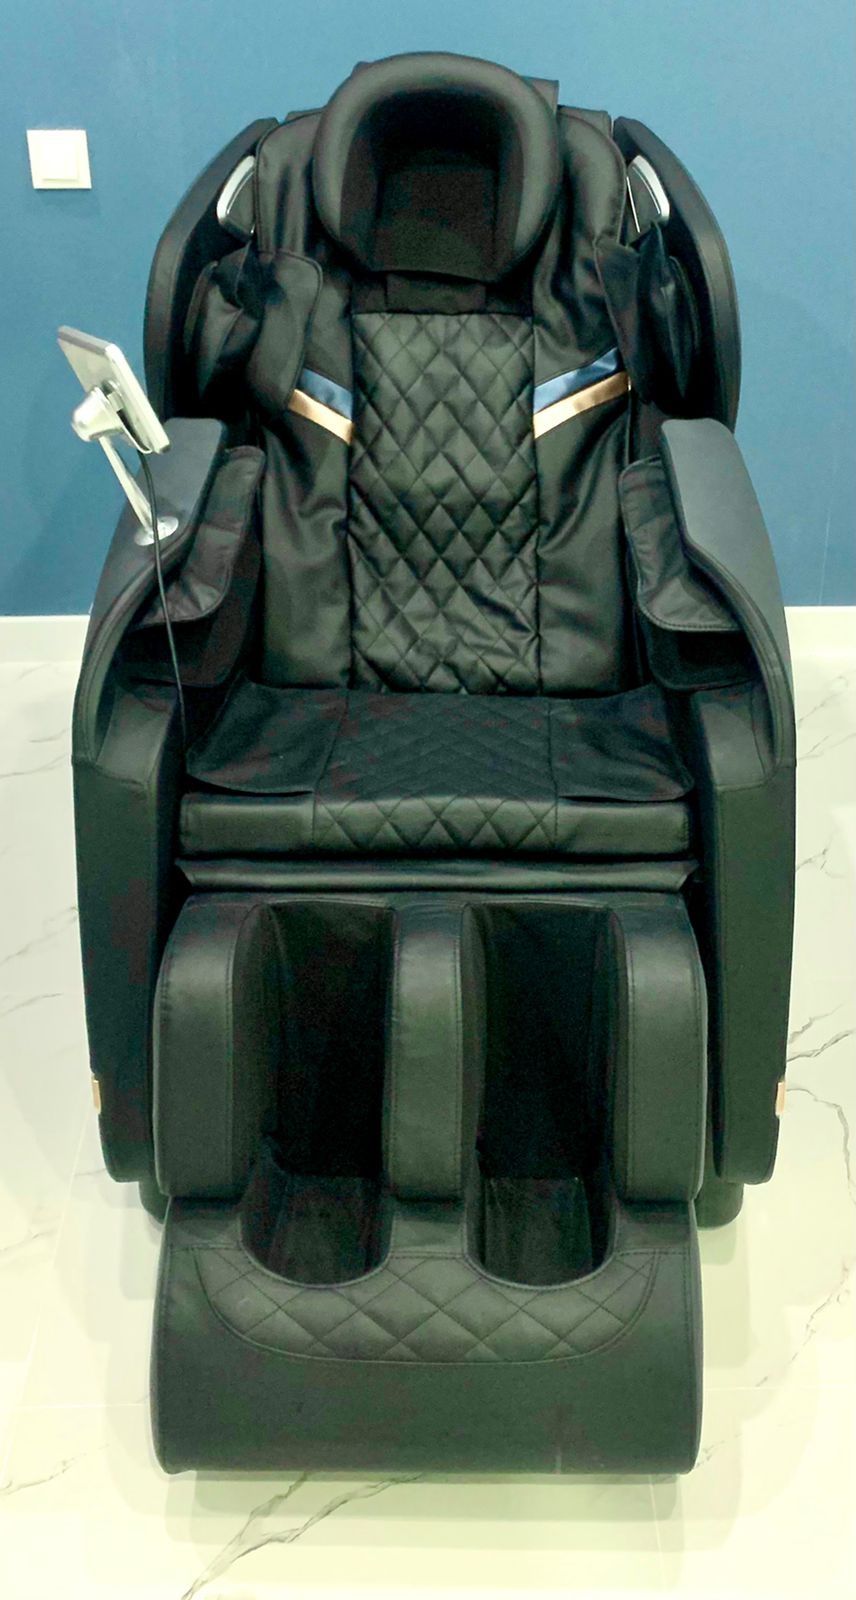 Lenovo Массажное кресло, Зоны массажа: спина, ягодицы, голова, бедра,